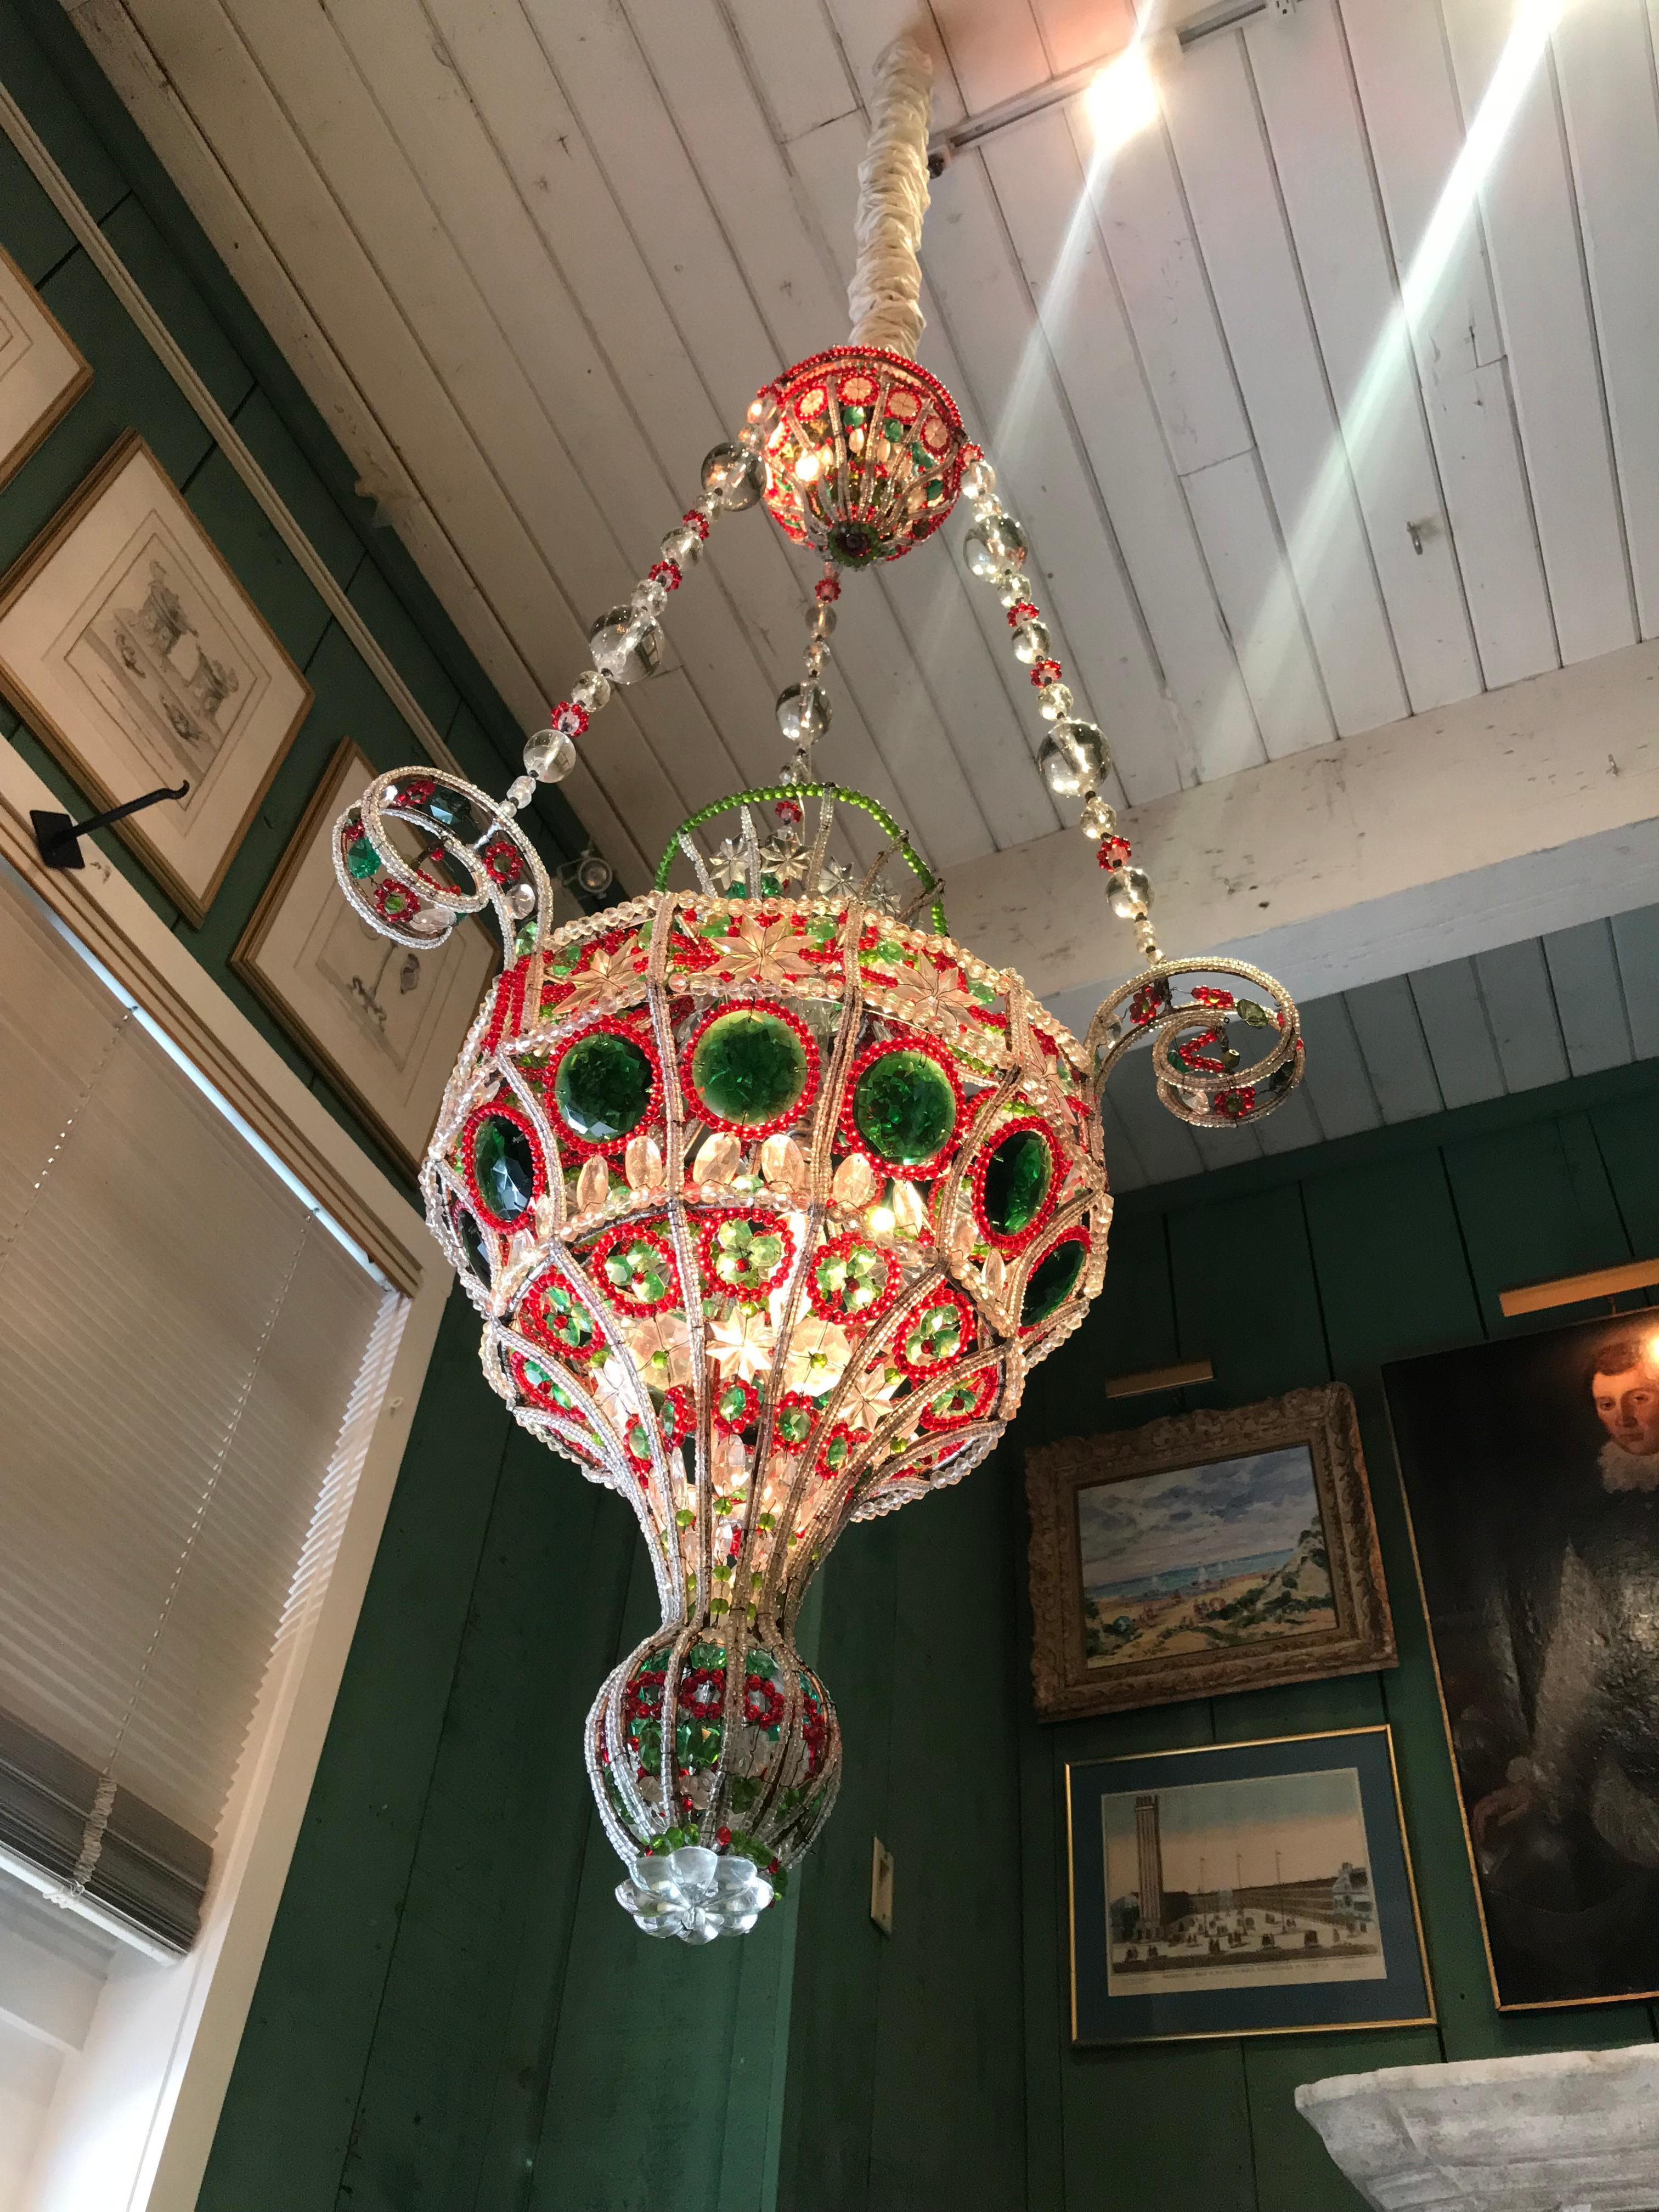 Antique Venetian Pendant Chandelier Ceiling Hanging Glass Lantern light 18th C. / early 19th century Venetian library chandelier pendulum colorful hanging lamp . Voir les photos détaillées, elles montrent l'excellente qualité de fabrication Jeux de